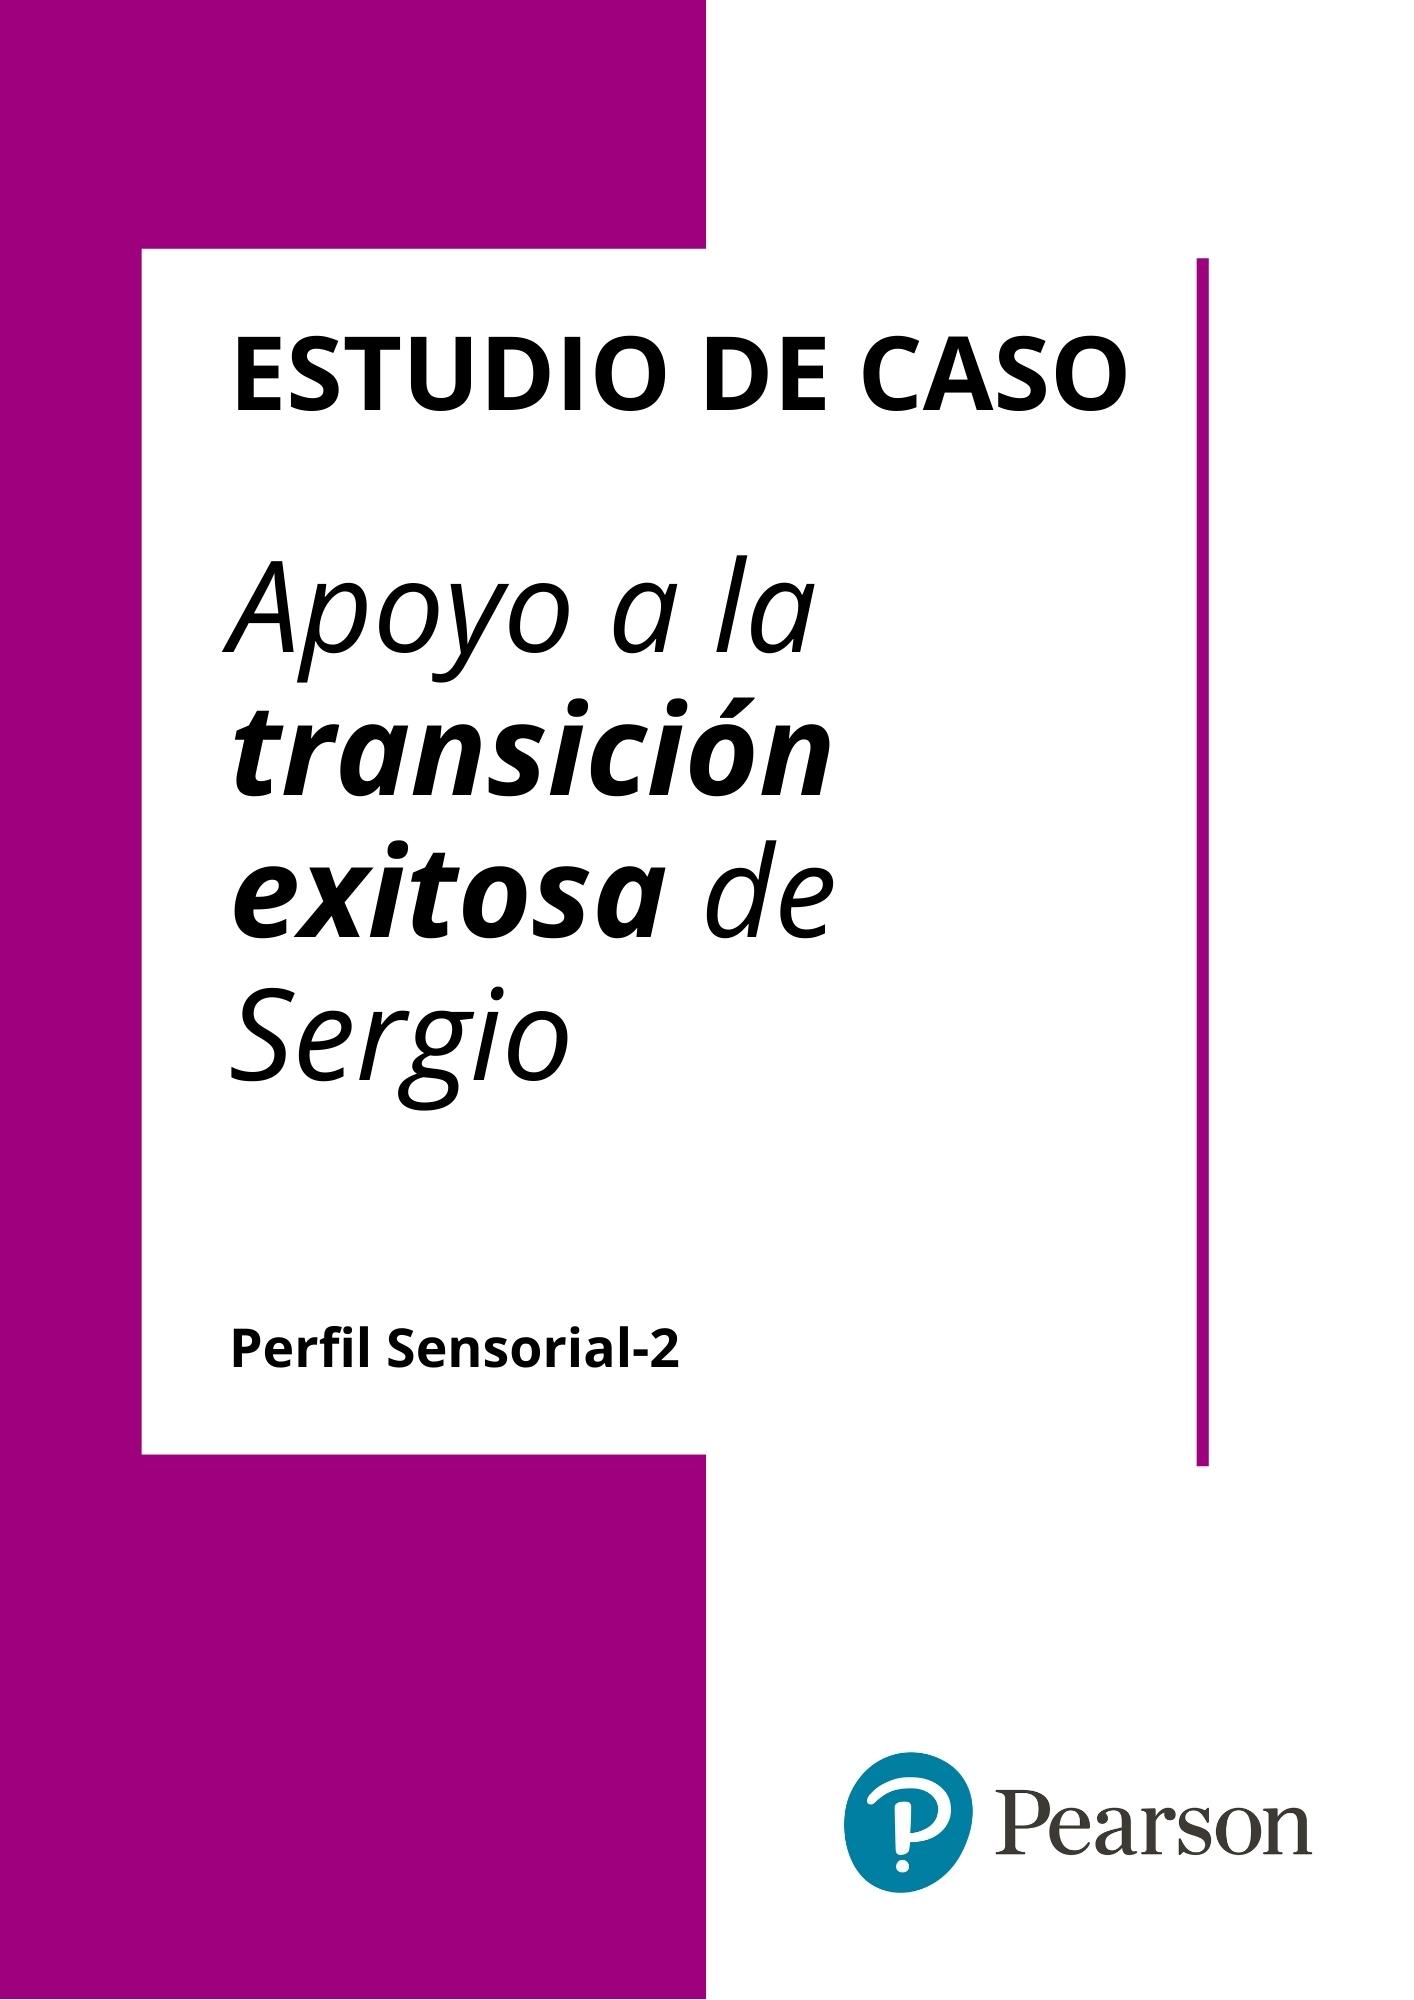 Estudio de Caso: “Apoyo a la transición exitosa de Sergio”.